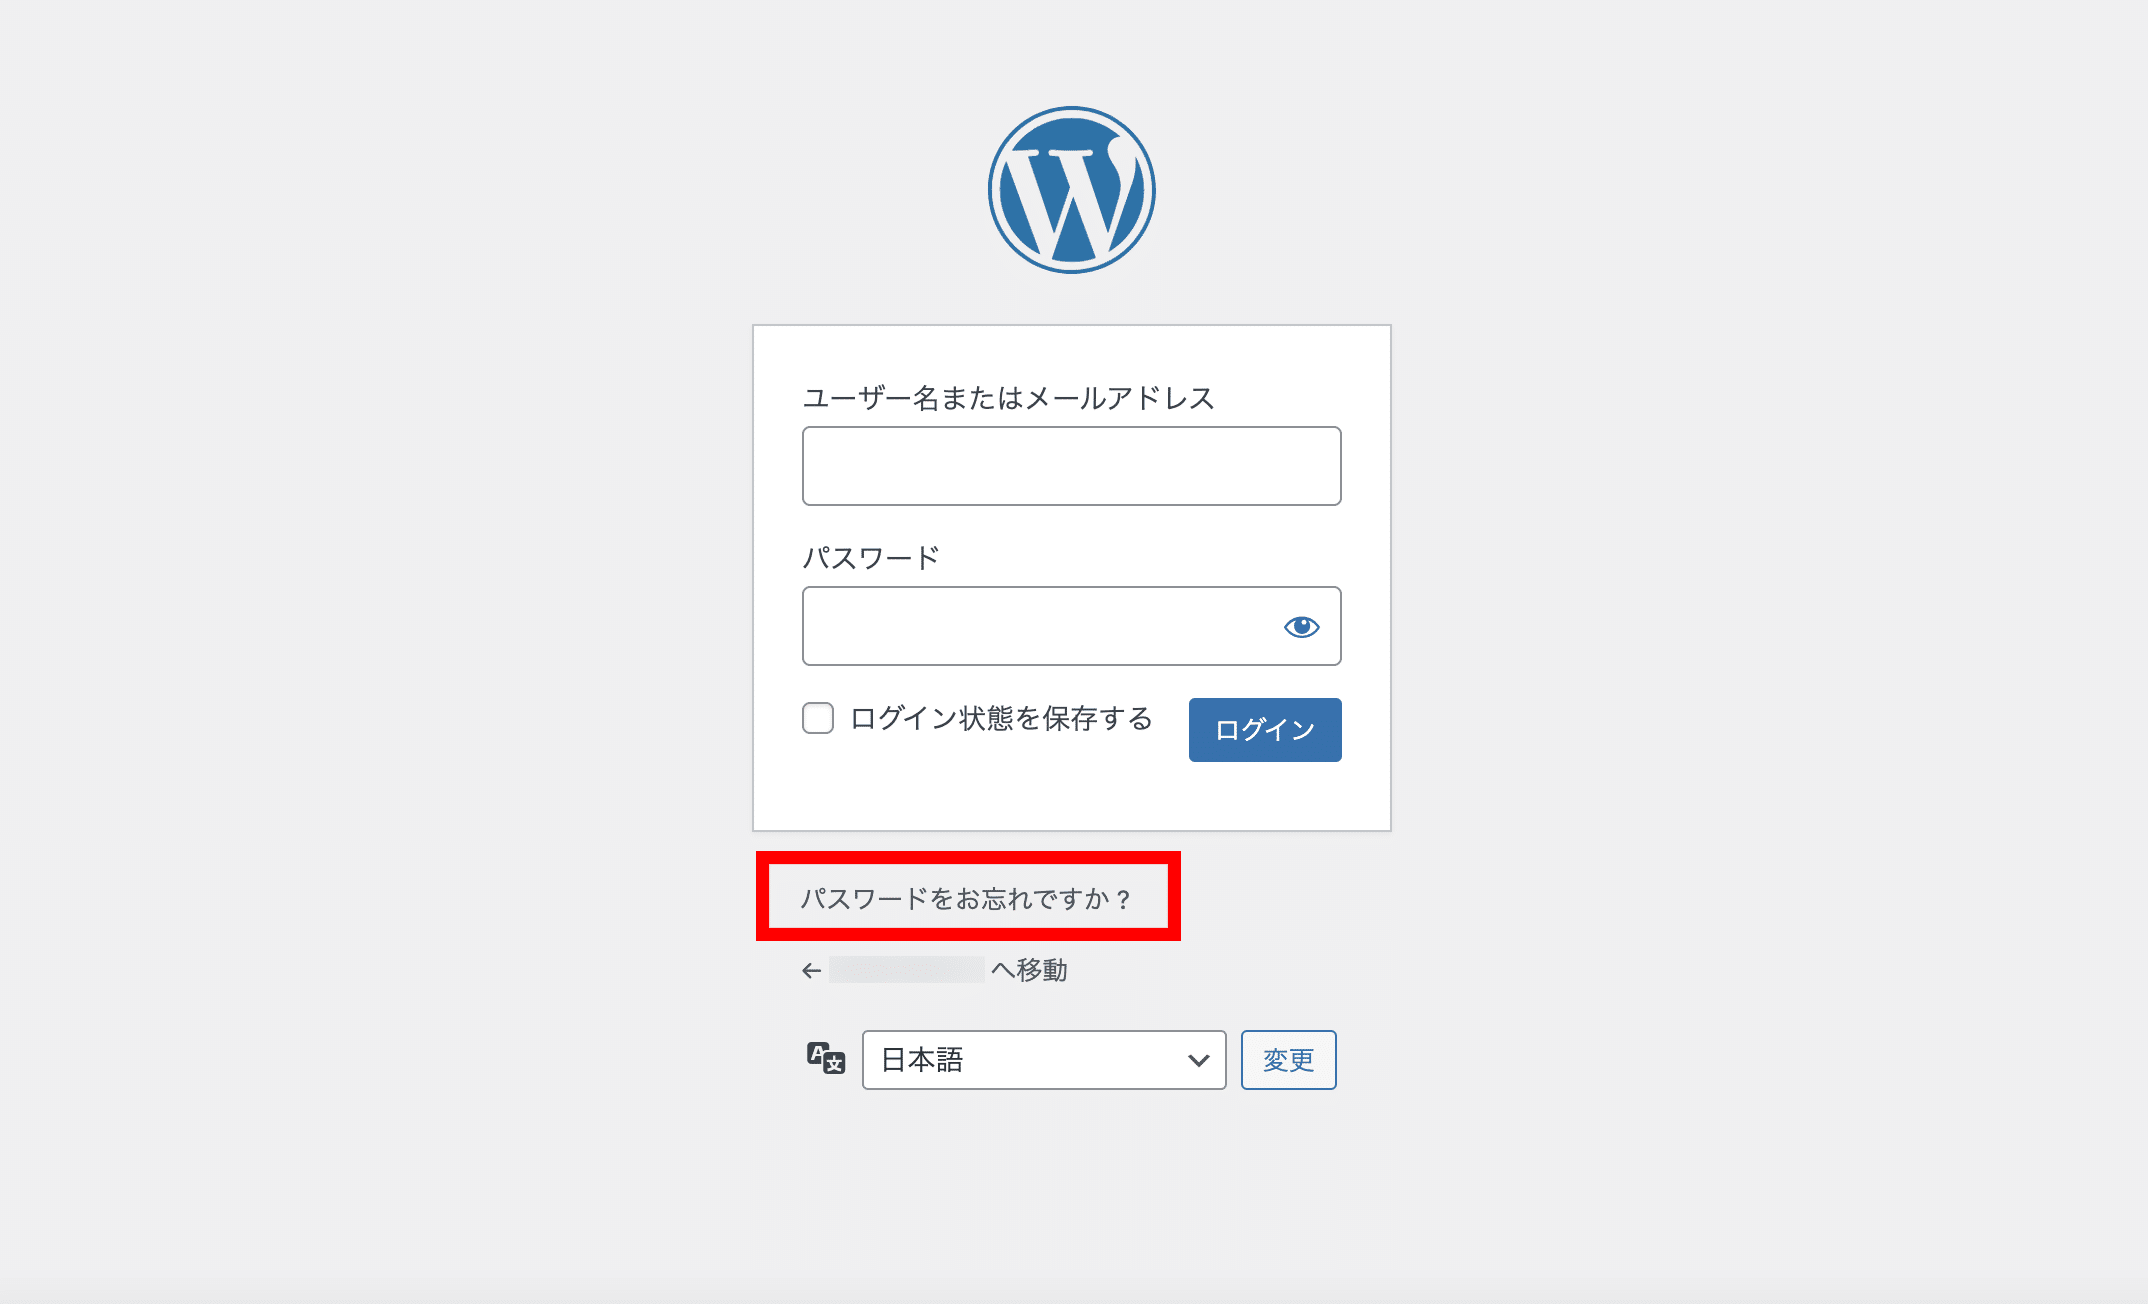 WordPressログイン画面の「パスワードをお忘れですか？」の表示場所